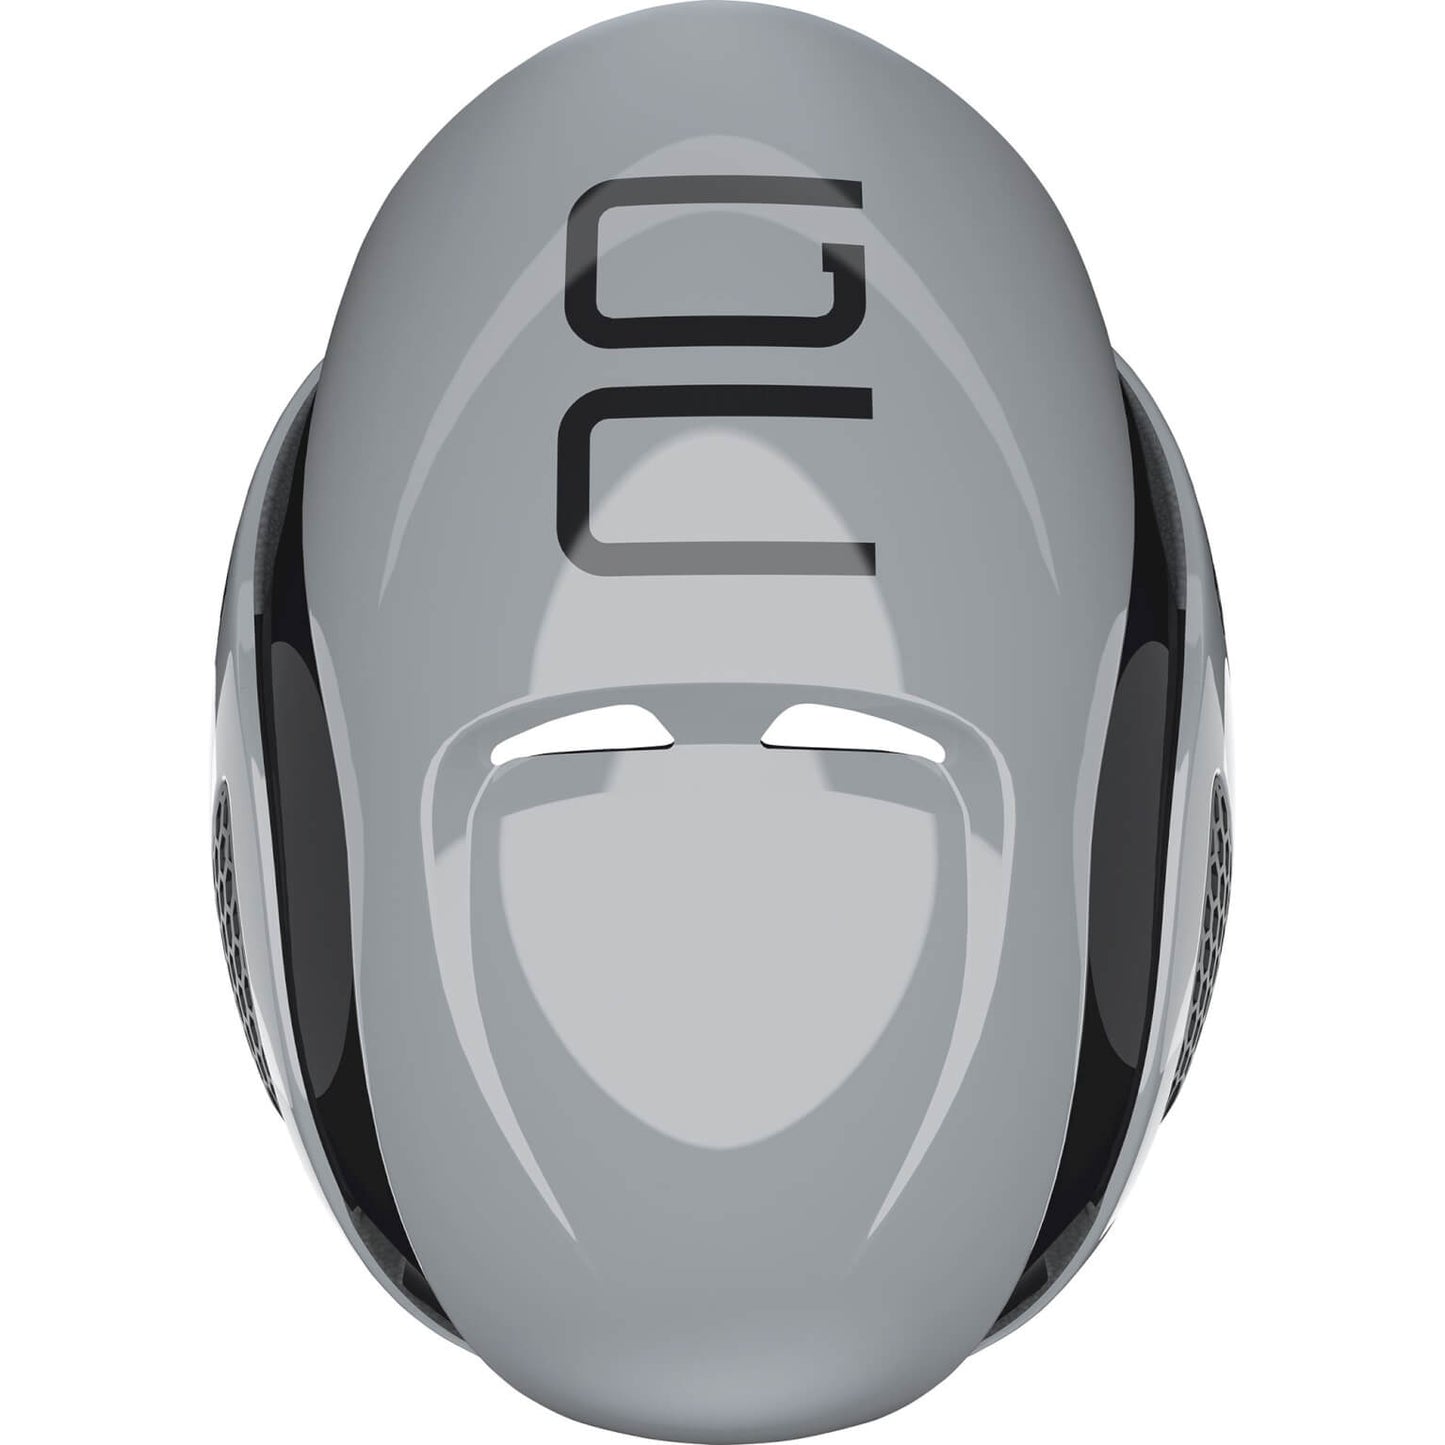 Abus Helmet GameChanger Race Grey S 51-55 cm